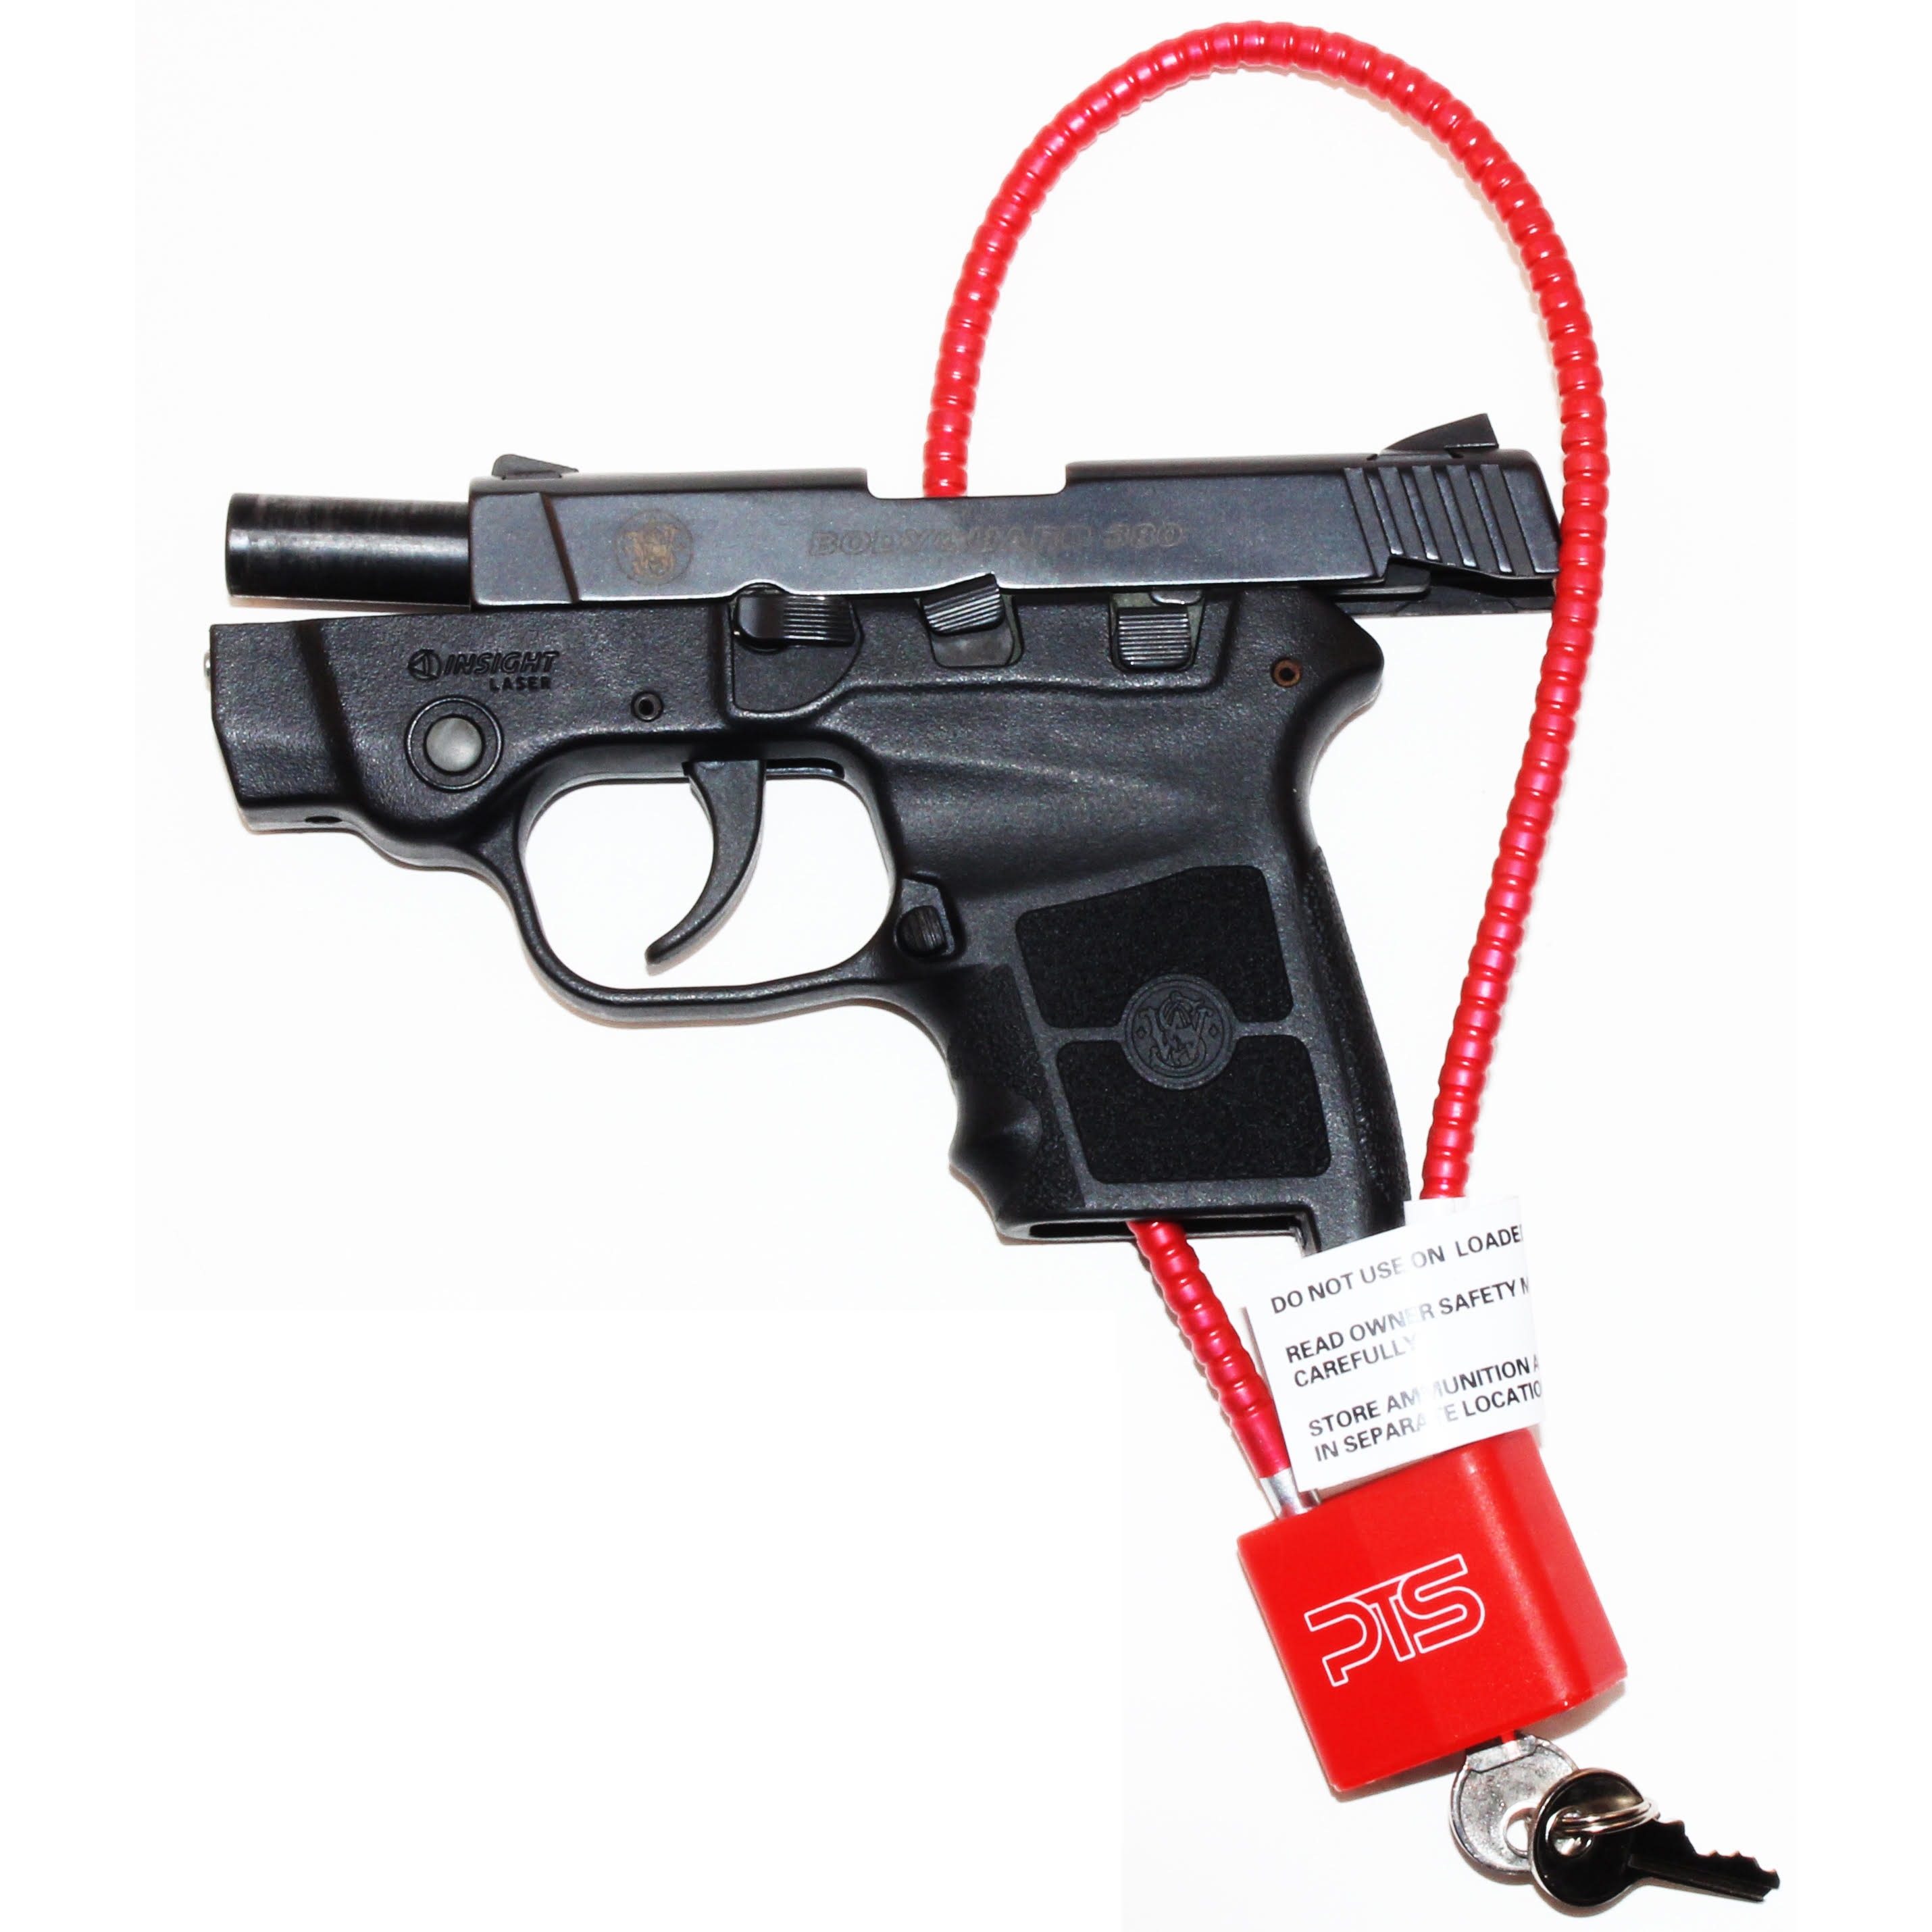 Cable Gun Lock 9" Trigger Pistol Shotgun Rifle Childsafe Lock Keyed Alike Qty 3 